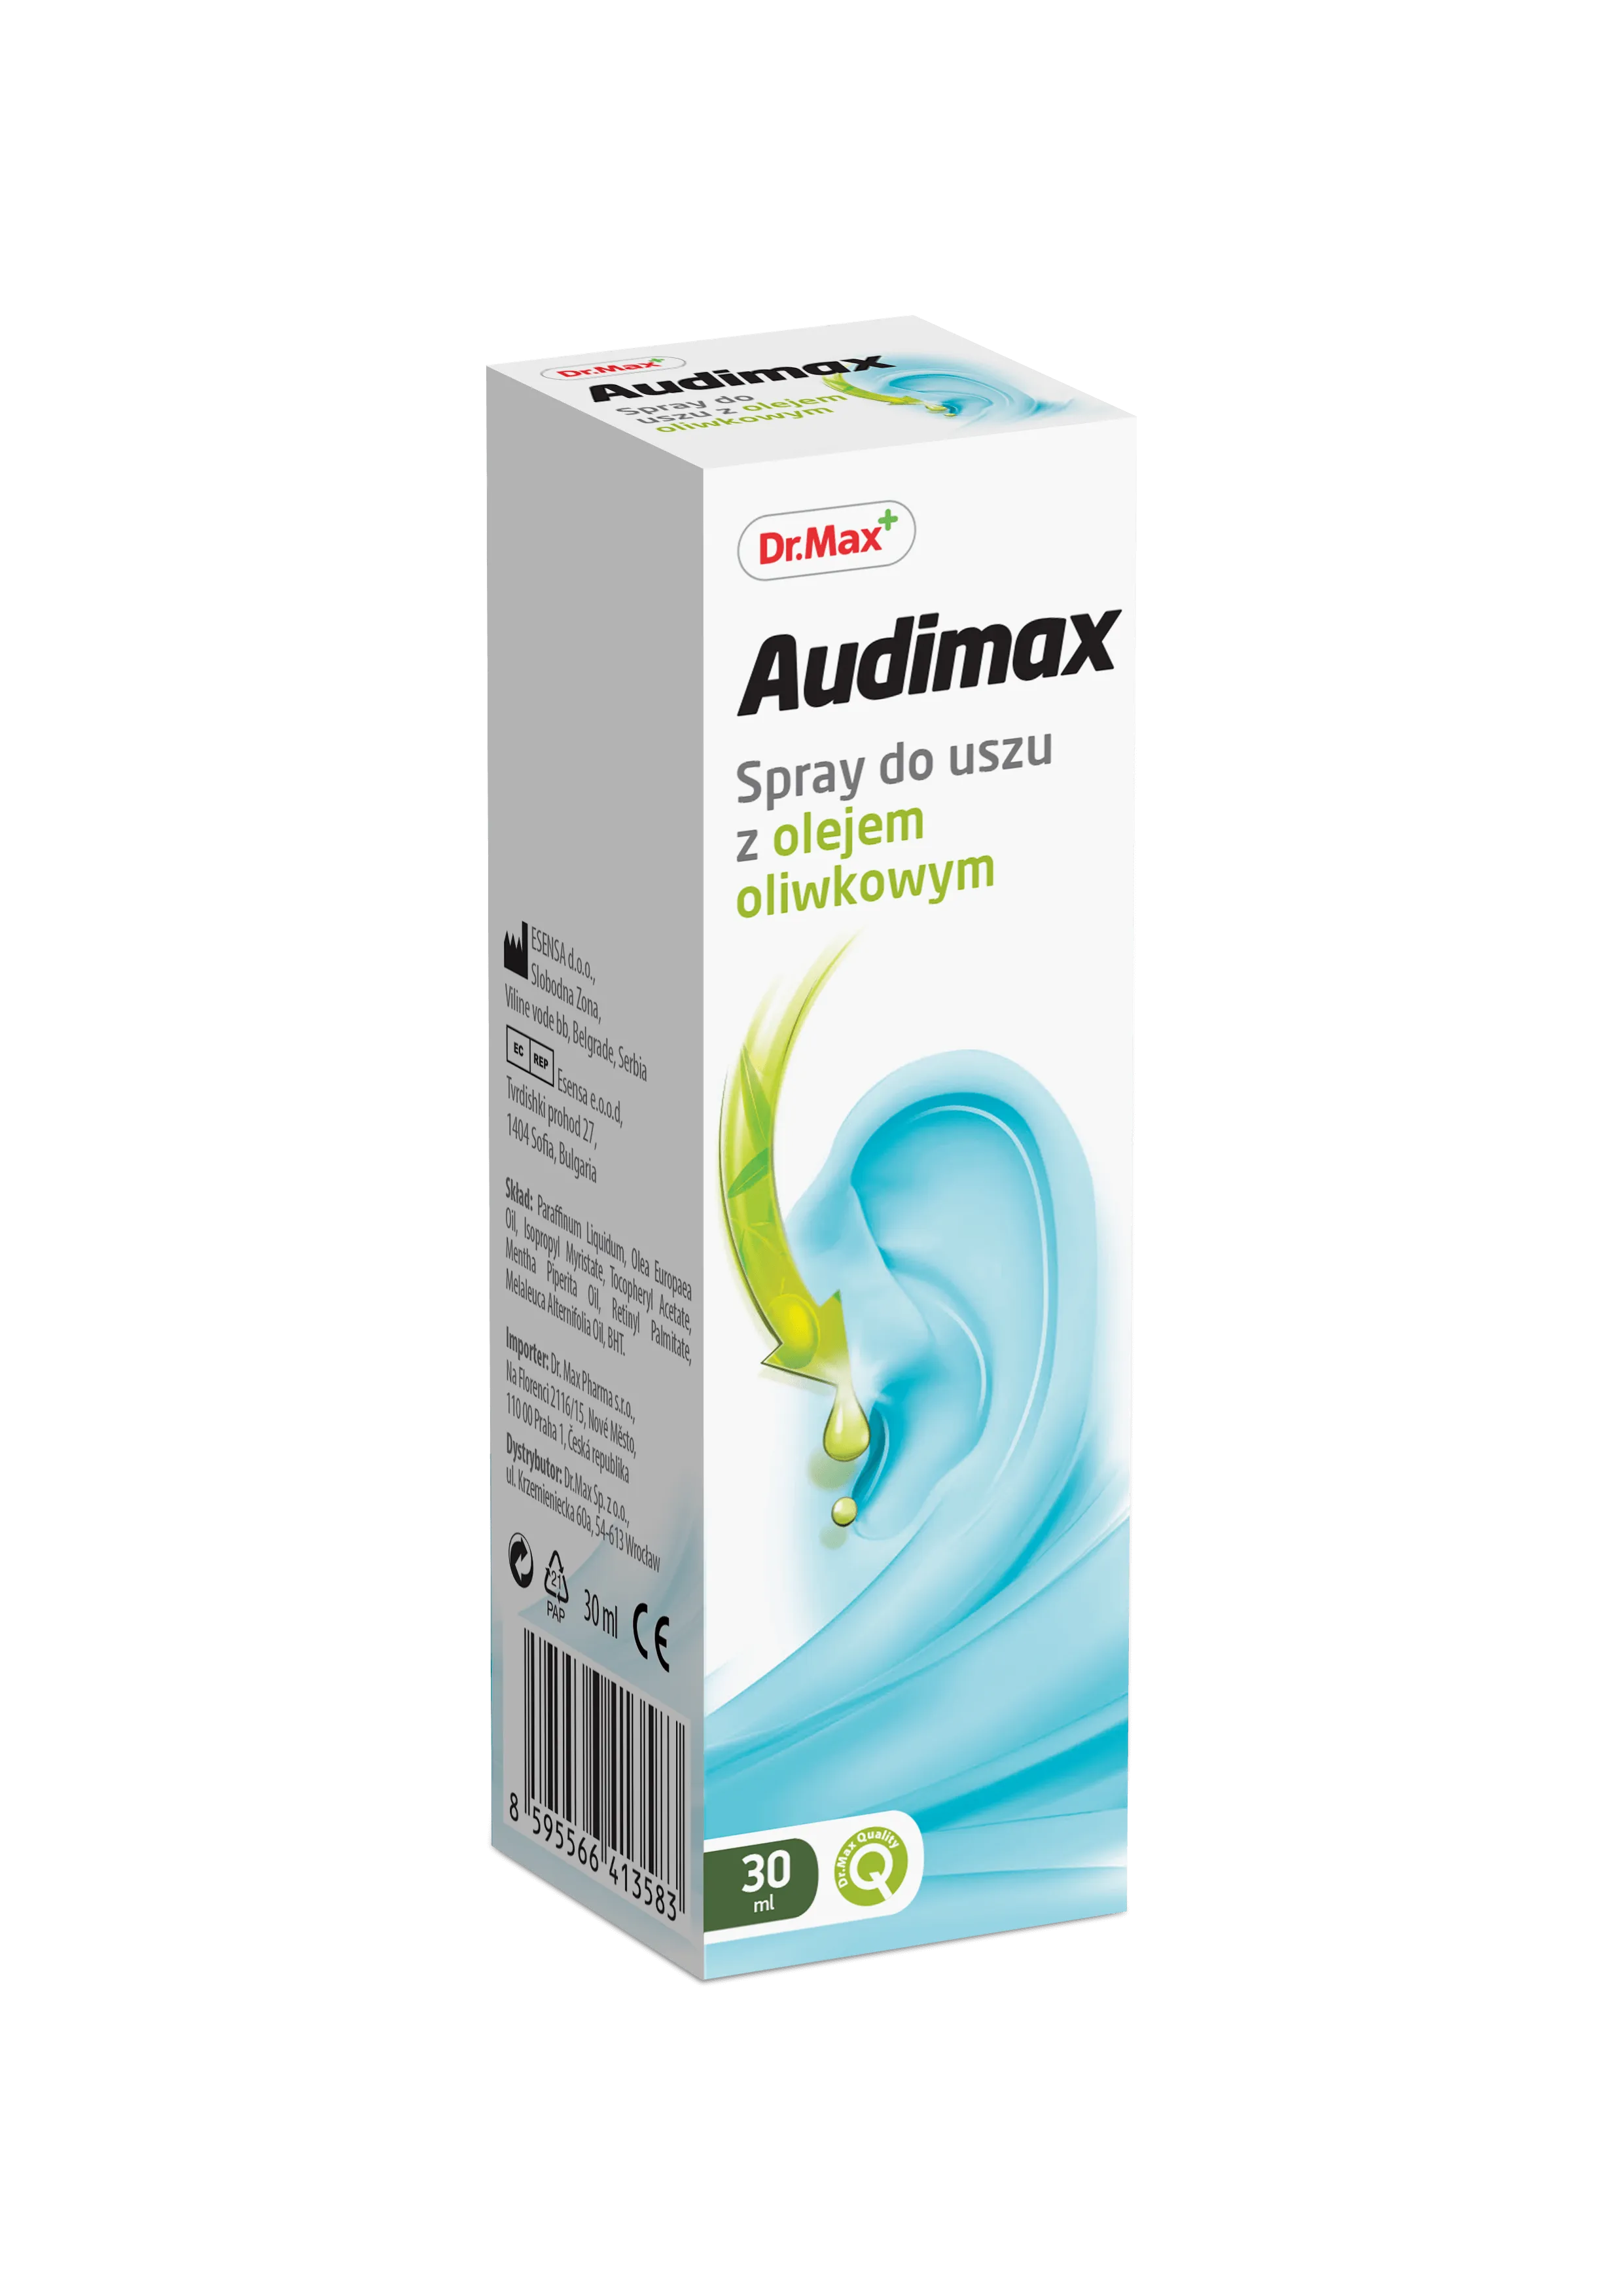 Audimax Dr.Max, spray do uszu, 30 ml